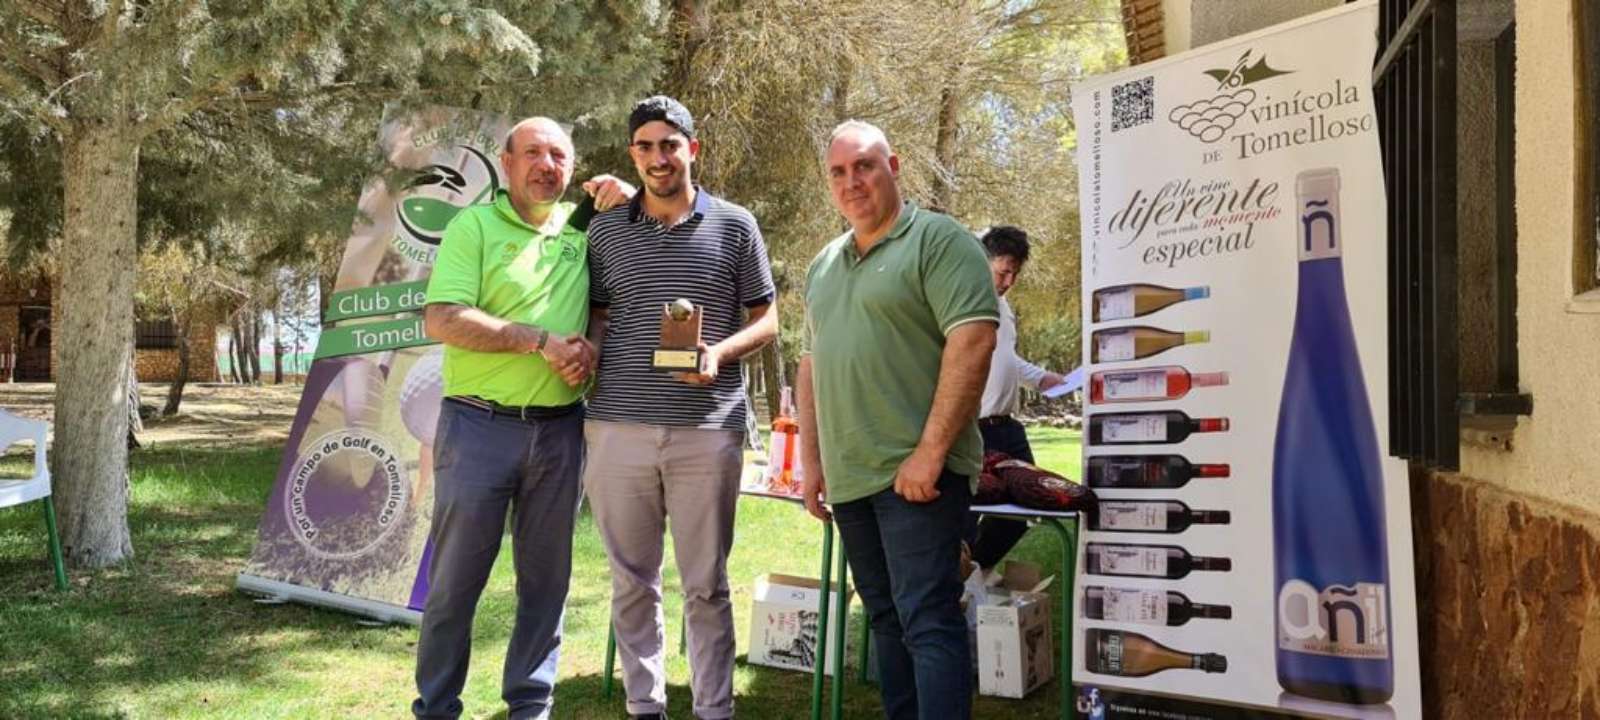 Zafra, Lola Cano, Camacho, Rafael López, Romero y Ballesteros, ganadores del torneo Vinícola de Tomelloso